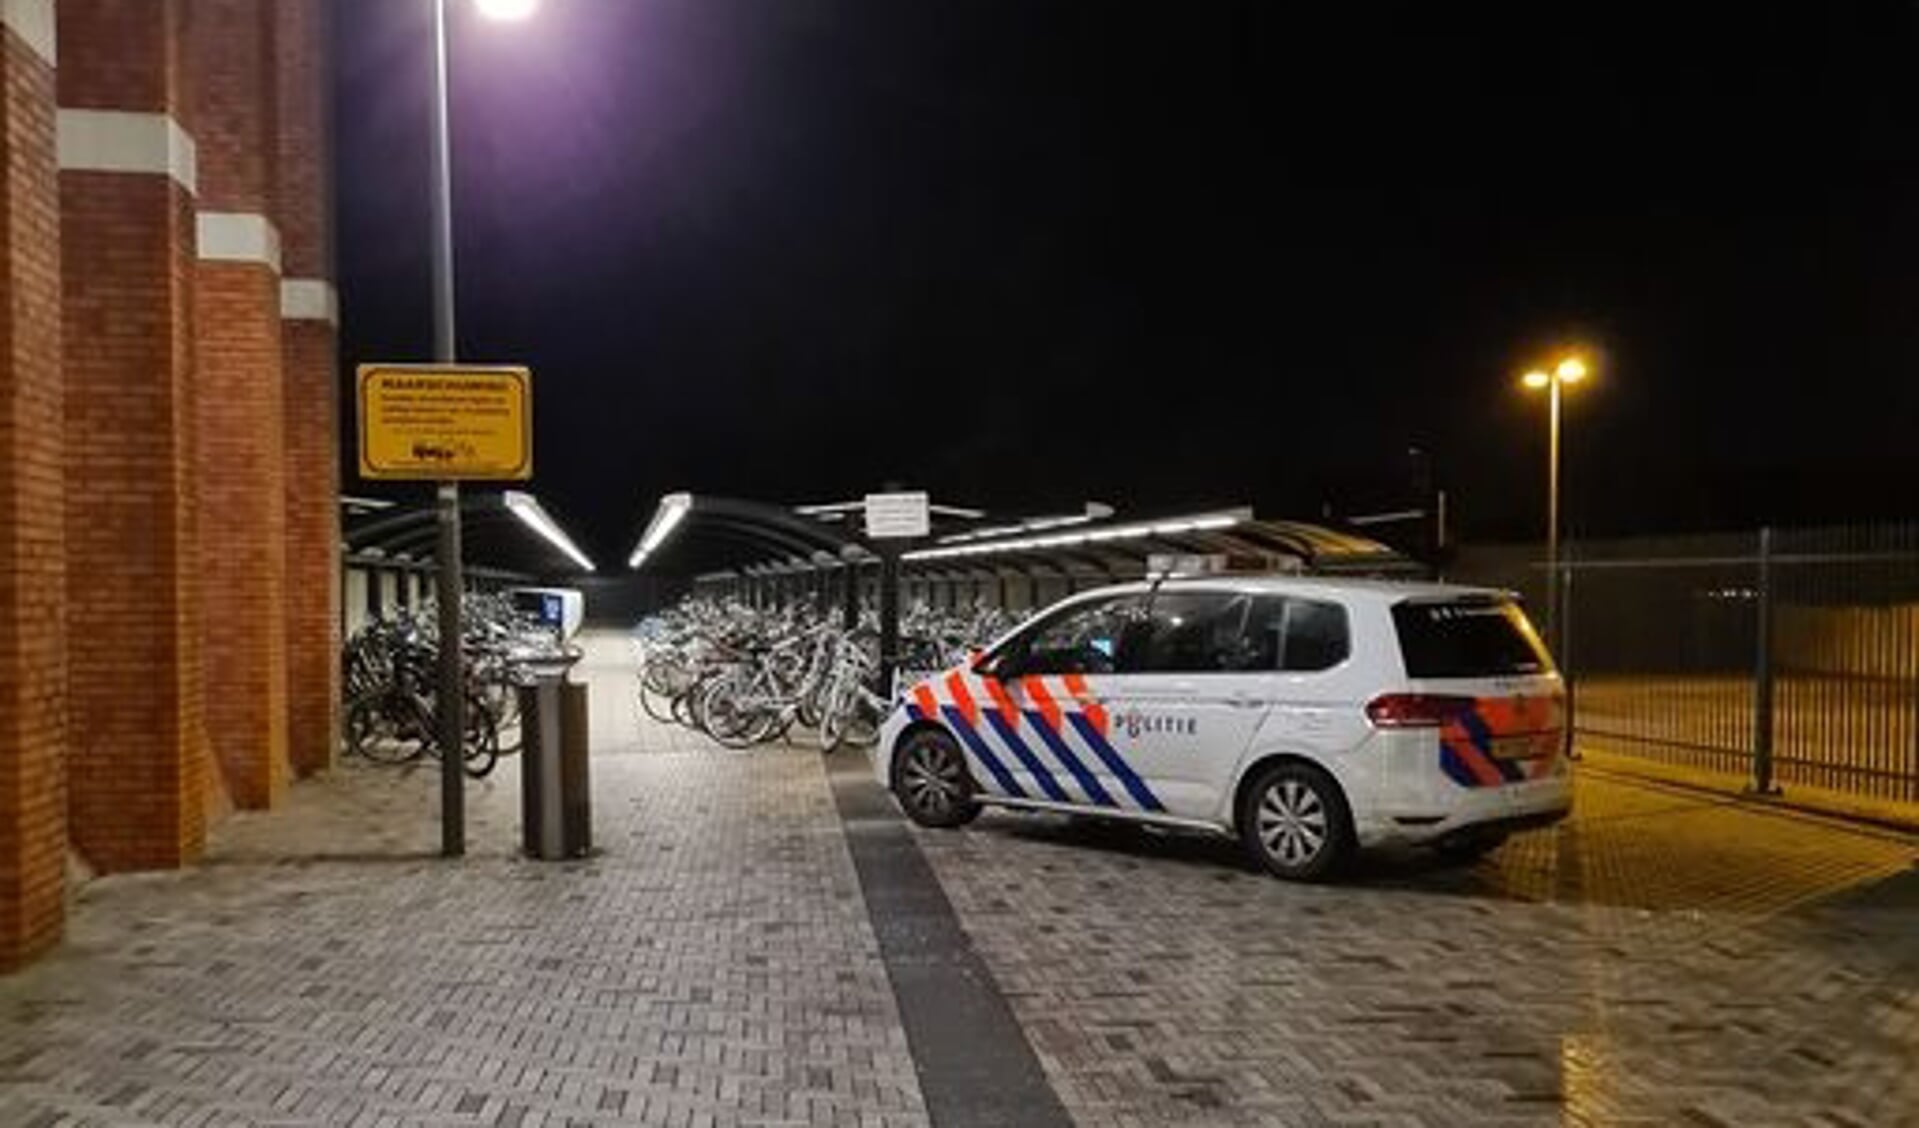 De politie bij station Dronten.